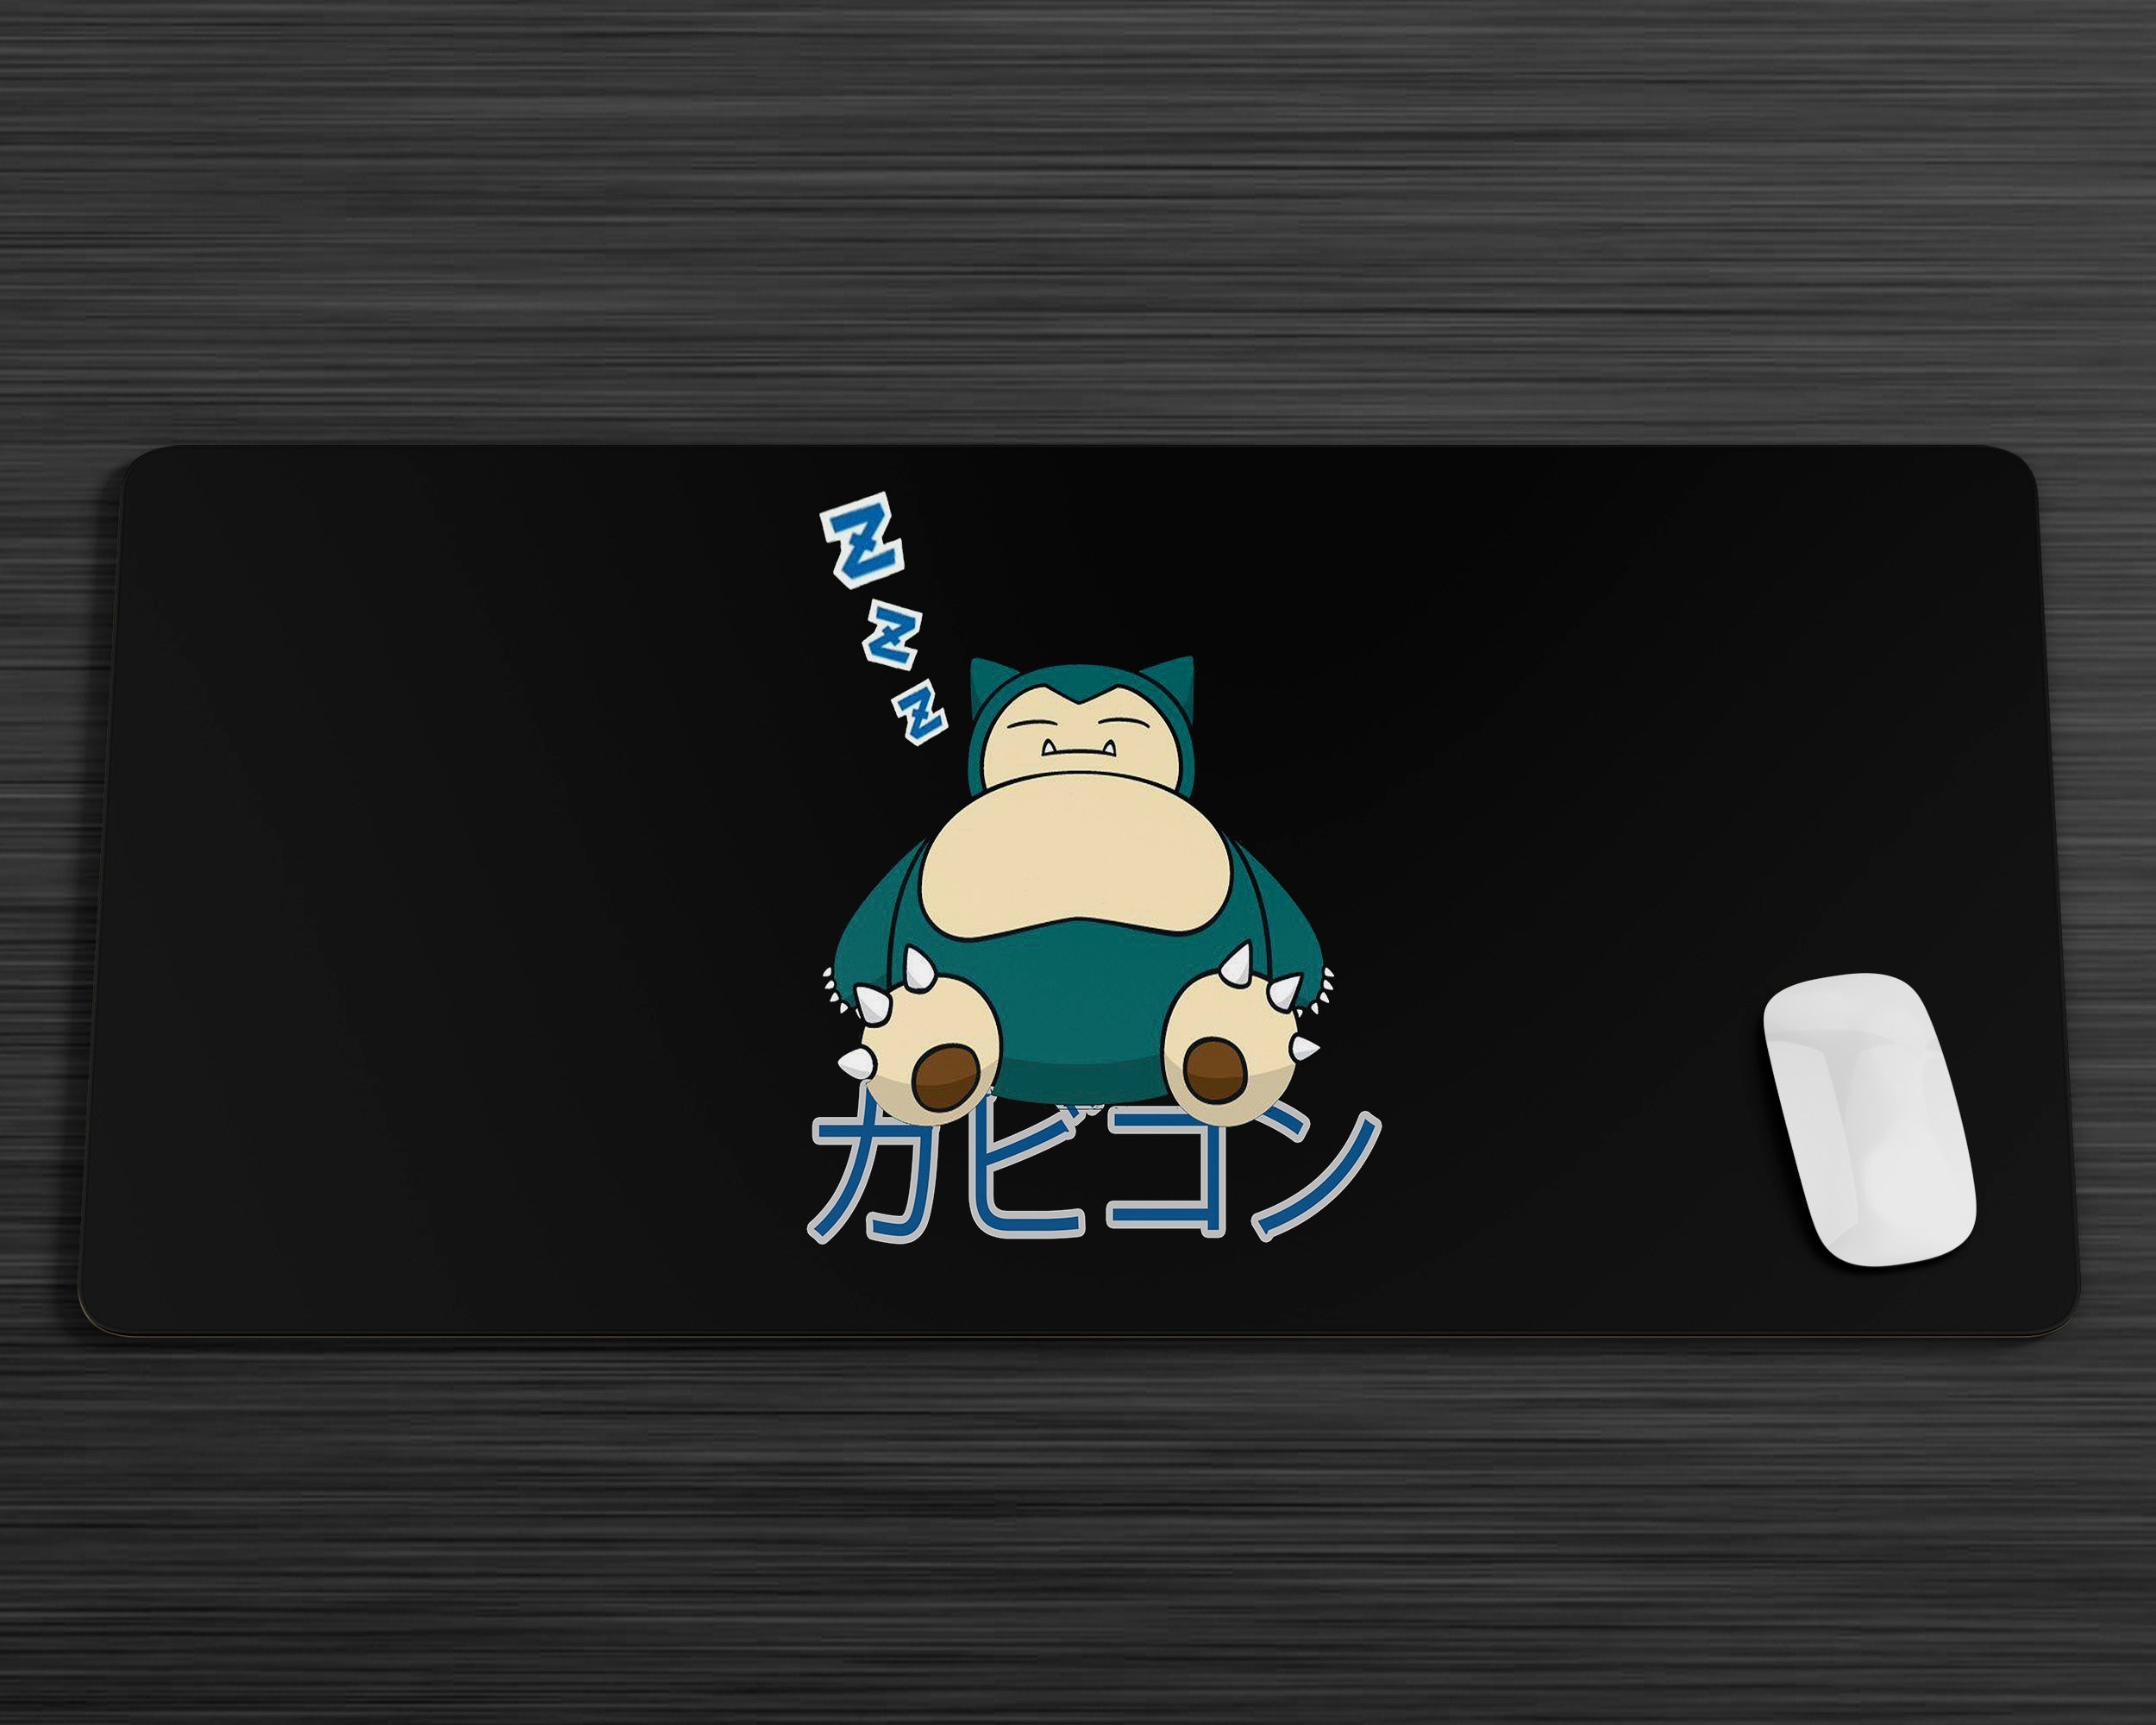 Snorlax - Pokémon - Image by Noele Art #3331126 - Zerochan Anime Image Board